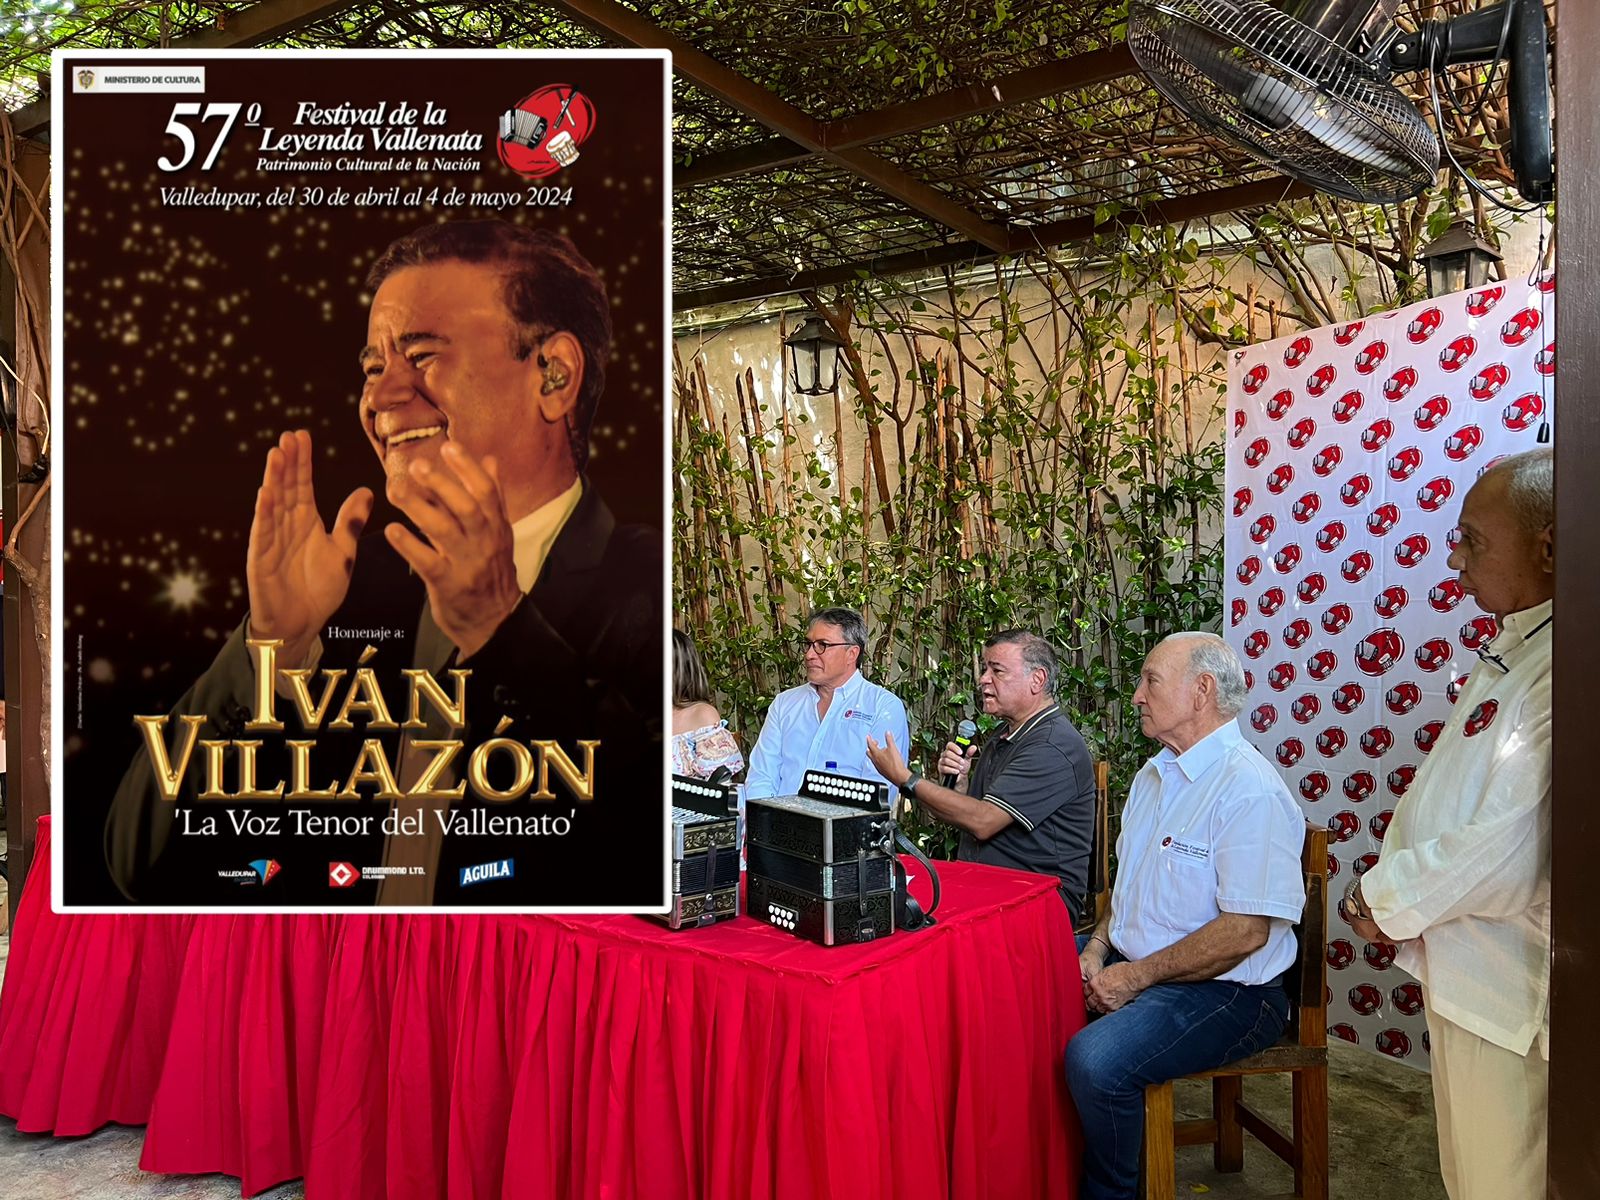 Así es el afiche promocional del Festival Vallenato en homenaje a Iván Villazón